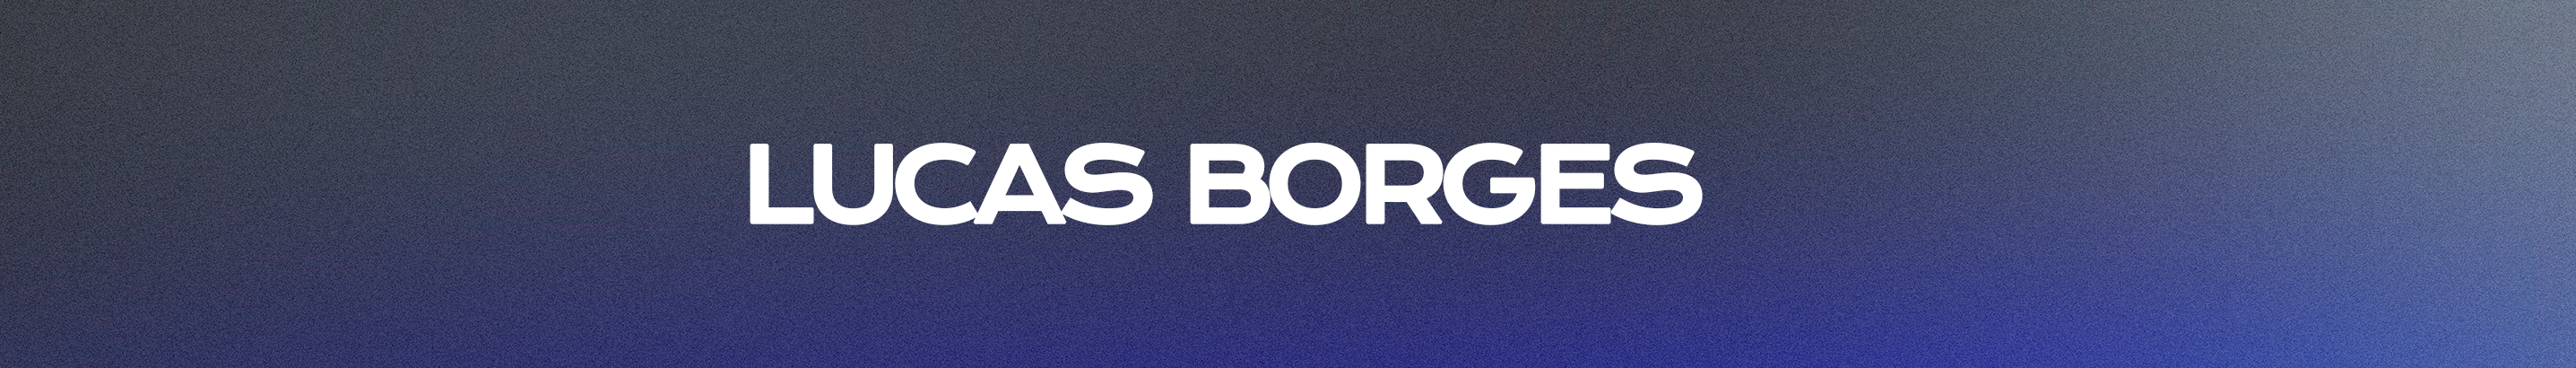 Lucas Borges's profile banner